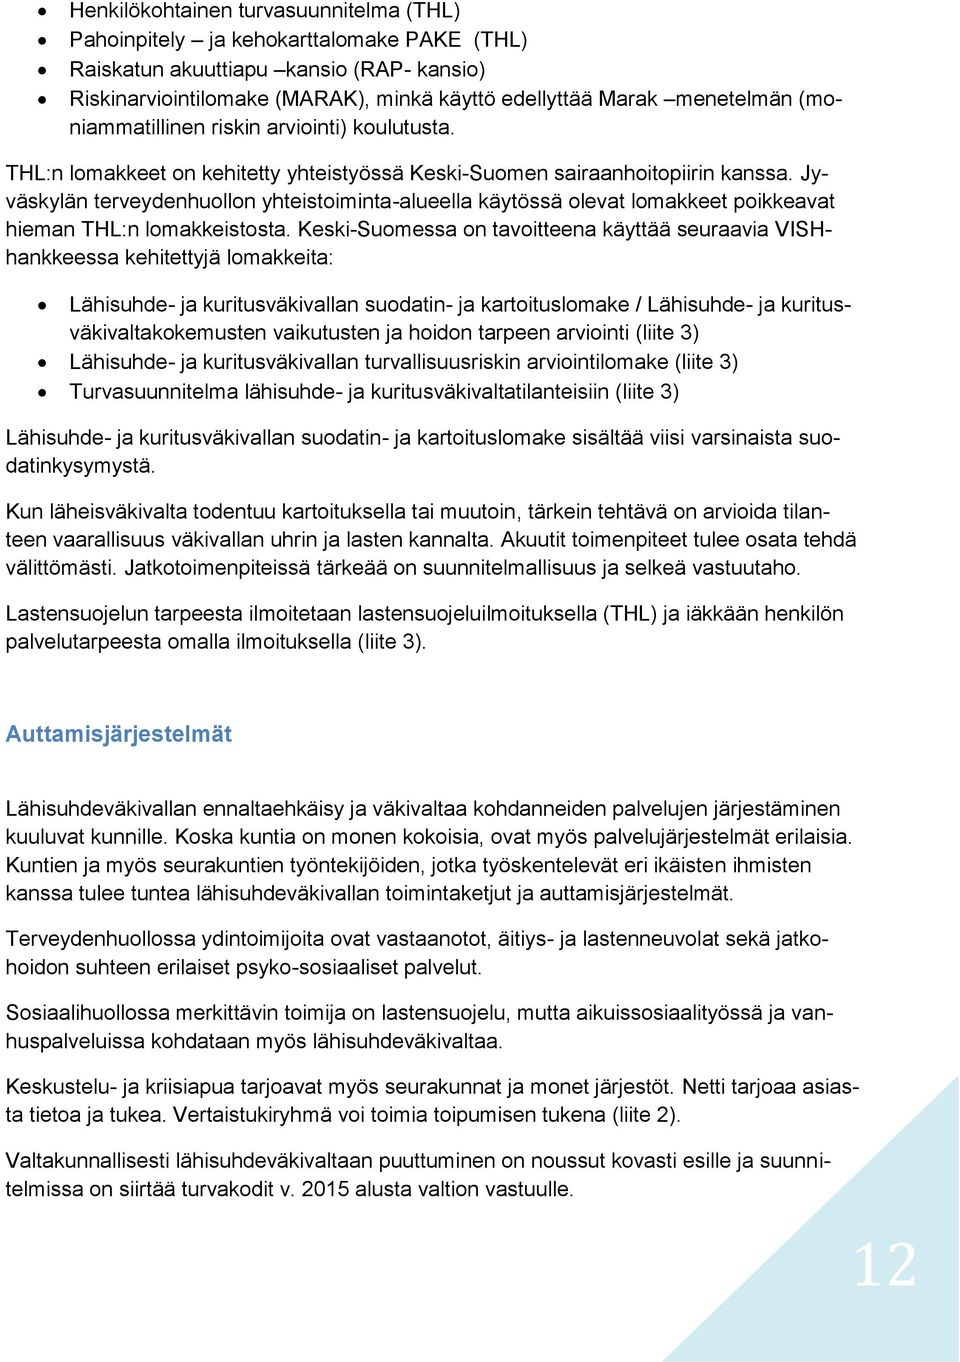 Jyväskylän terveydenhuollon yhteistoiminta-alueella käytössä olevat lomakkeet poikkeavat hieman THL:n lomakkeistosta.